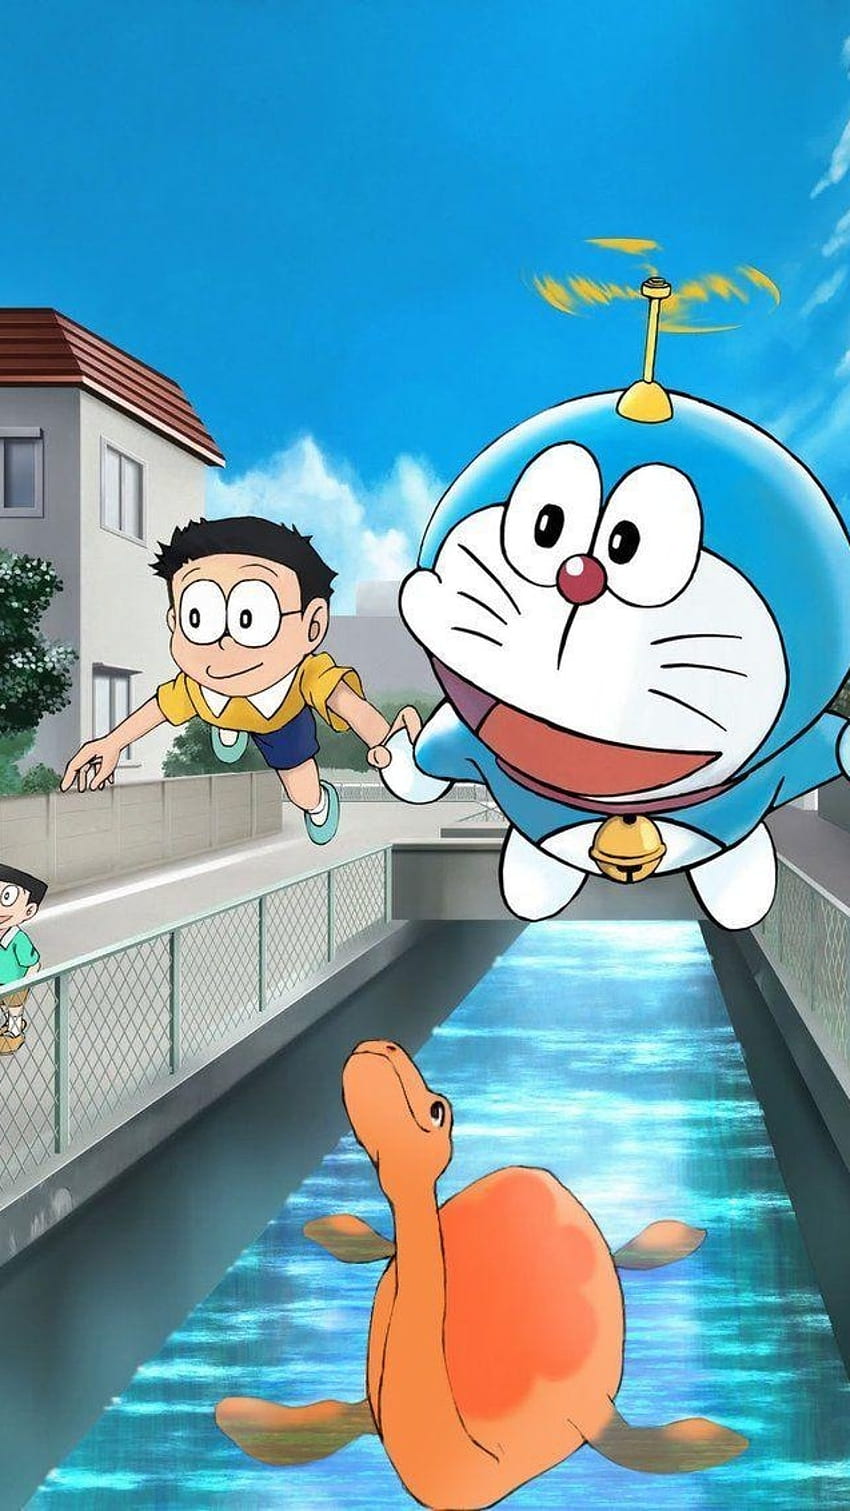 Shinchan và Doraemon, hai nhân vật vui nhộn luôn tạo cảm hứng cho bạn. Hãy tận hưởng bức ảnh HD cao cấp miêu tả hai nhân vật đang bay trên chiếc mũ trực thăng. Truy cập ngay trang chia sẻ ảnh nền Pxfuel để sở hữu nó cho điện thoại của bạn. Bạn sẽ thấy việc sở hữu một bức ảnh nền đẹp là thật tuyệt vời!